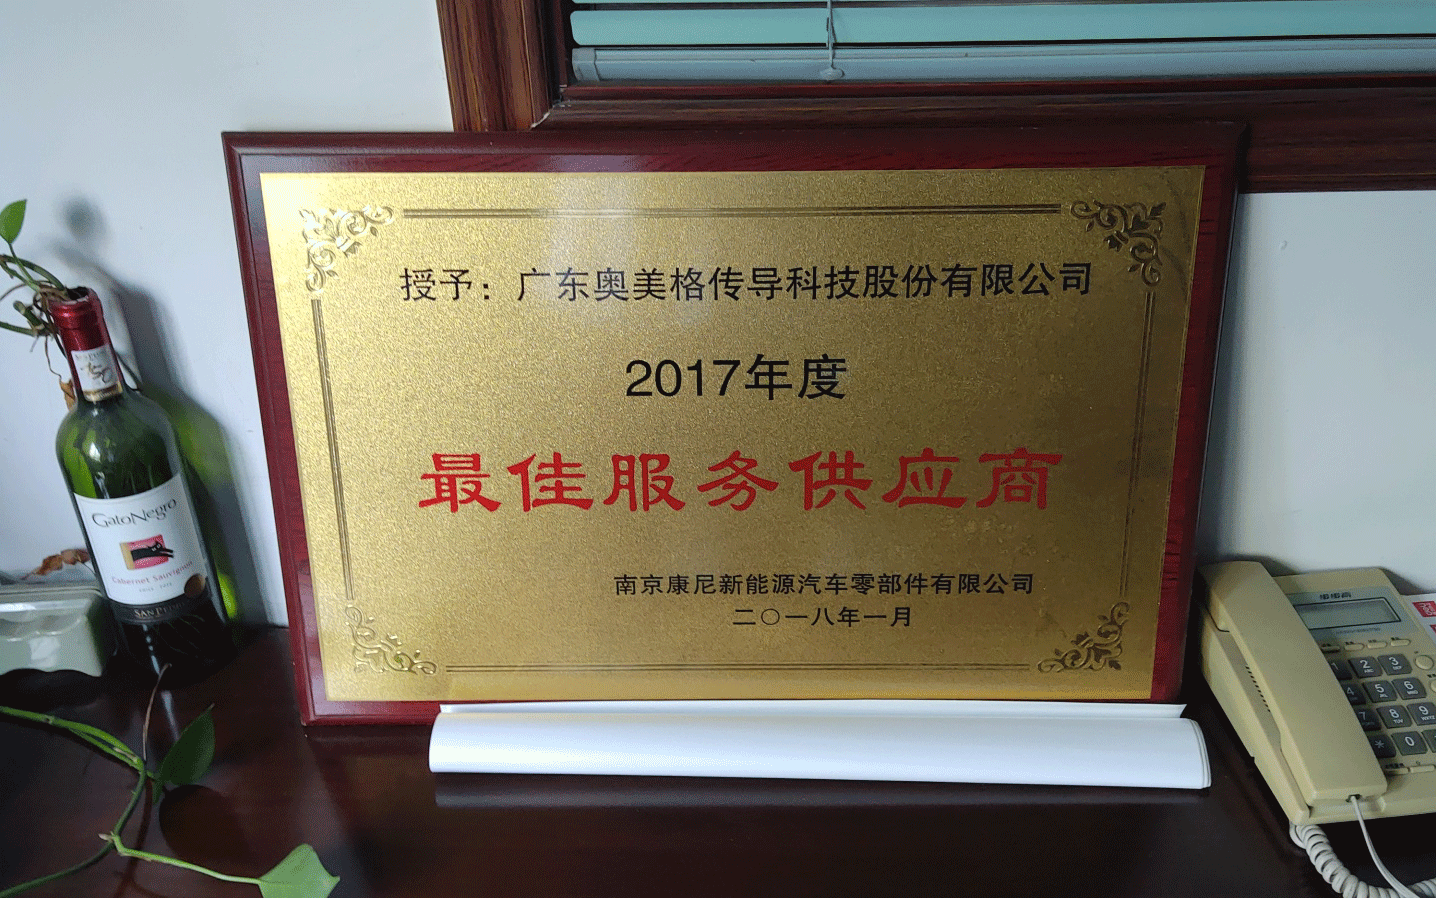 OMG a remporté le prix du fournisseur exceptionnel de Nanjing KANGNI